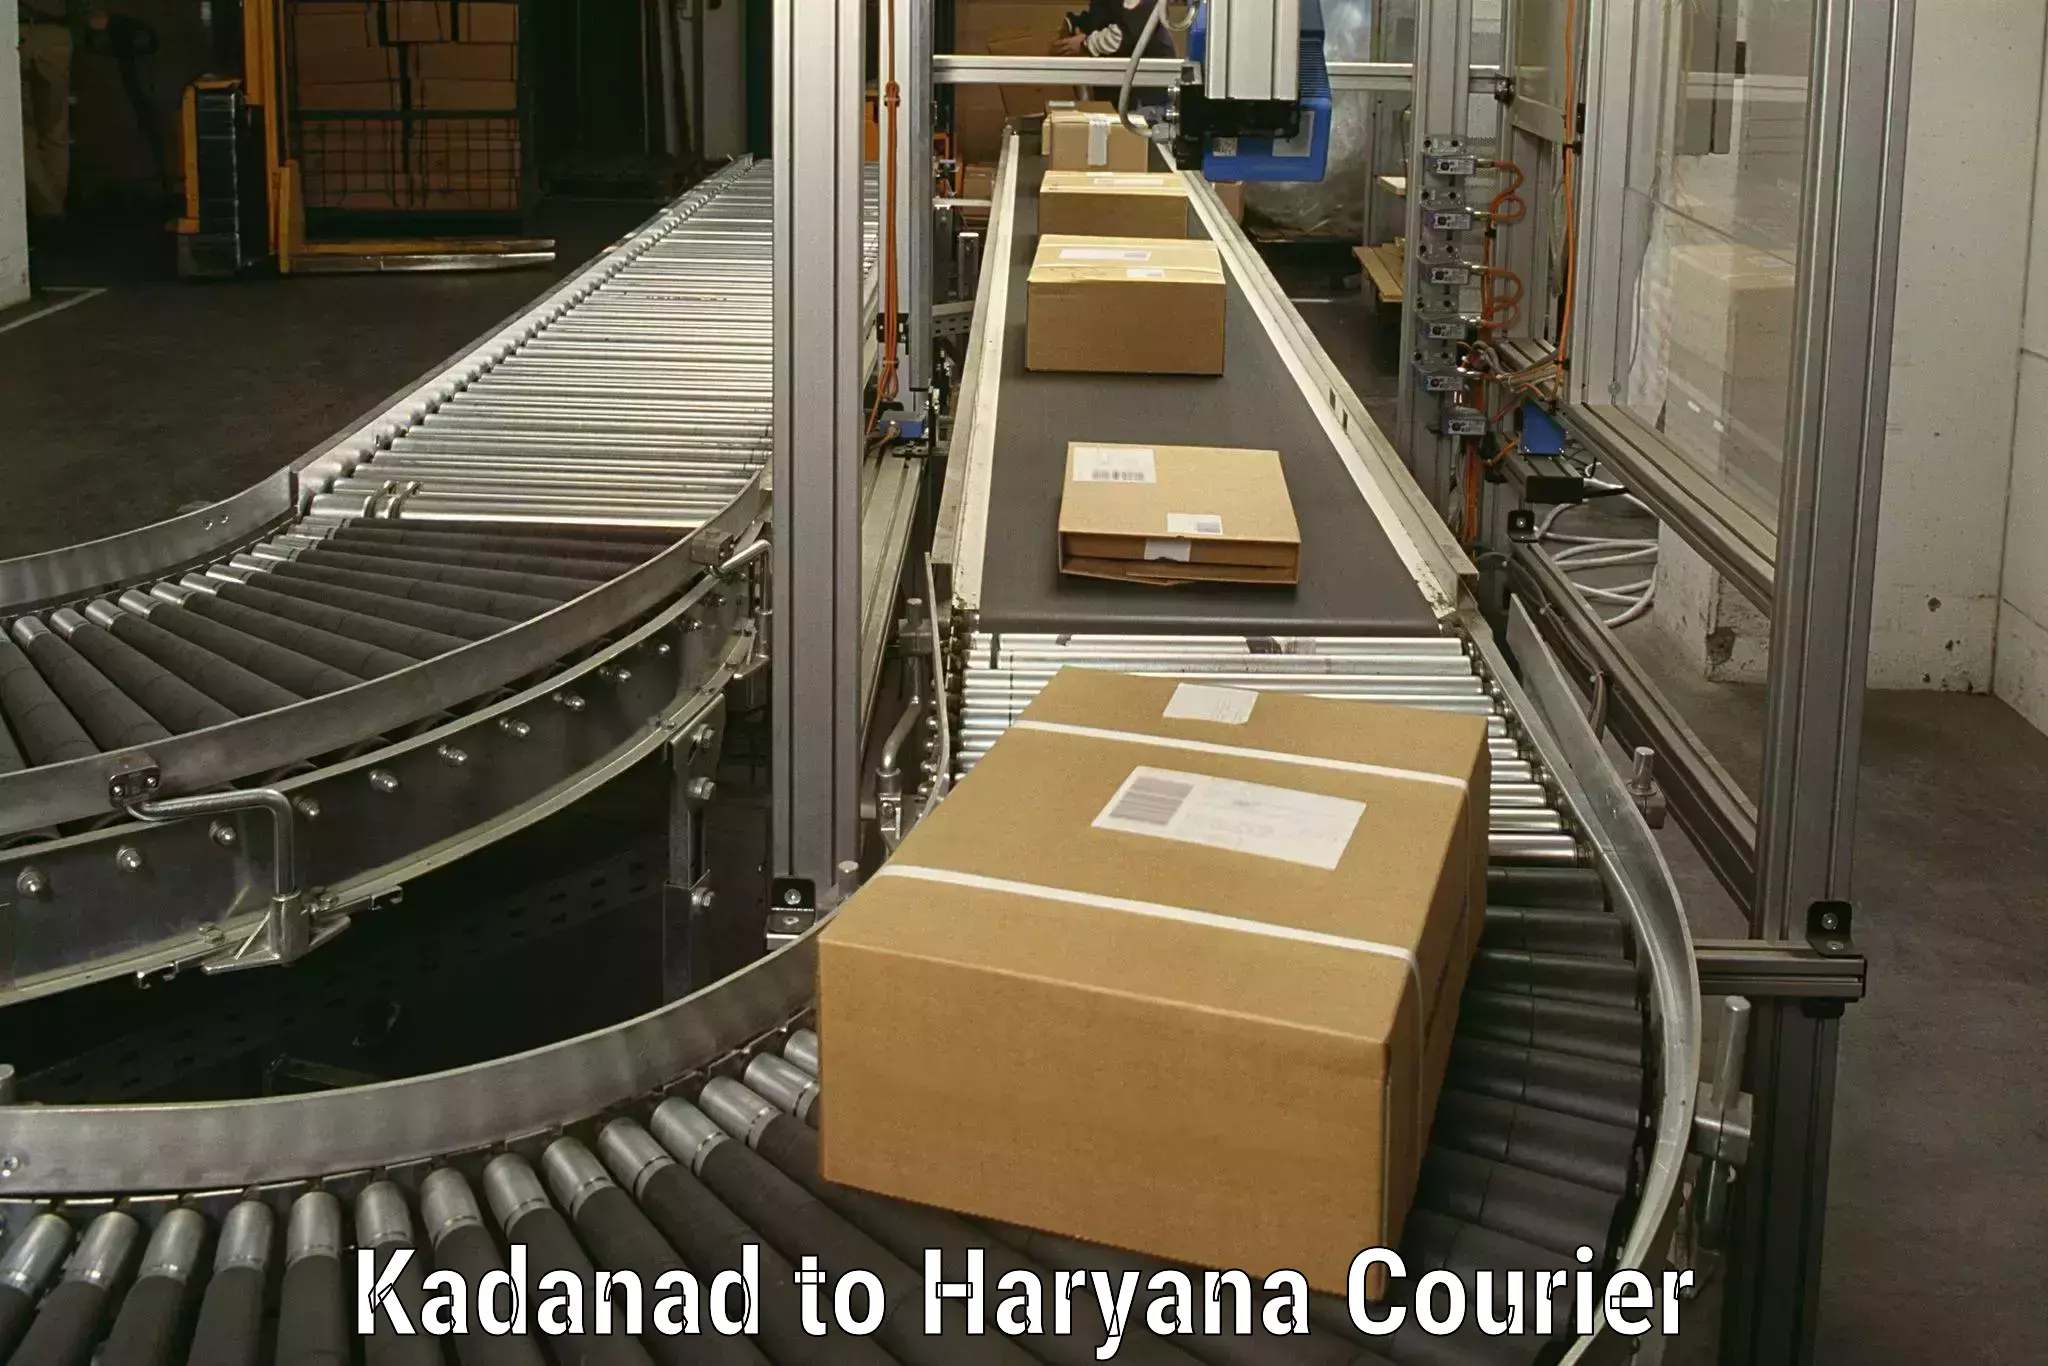 Furniture handling services Kadanad to Panchkula